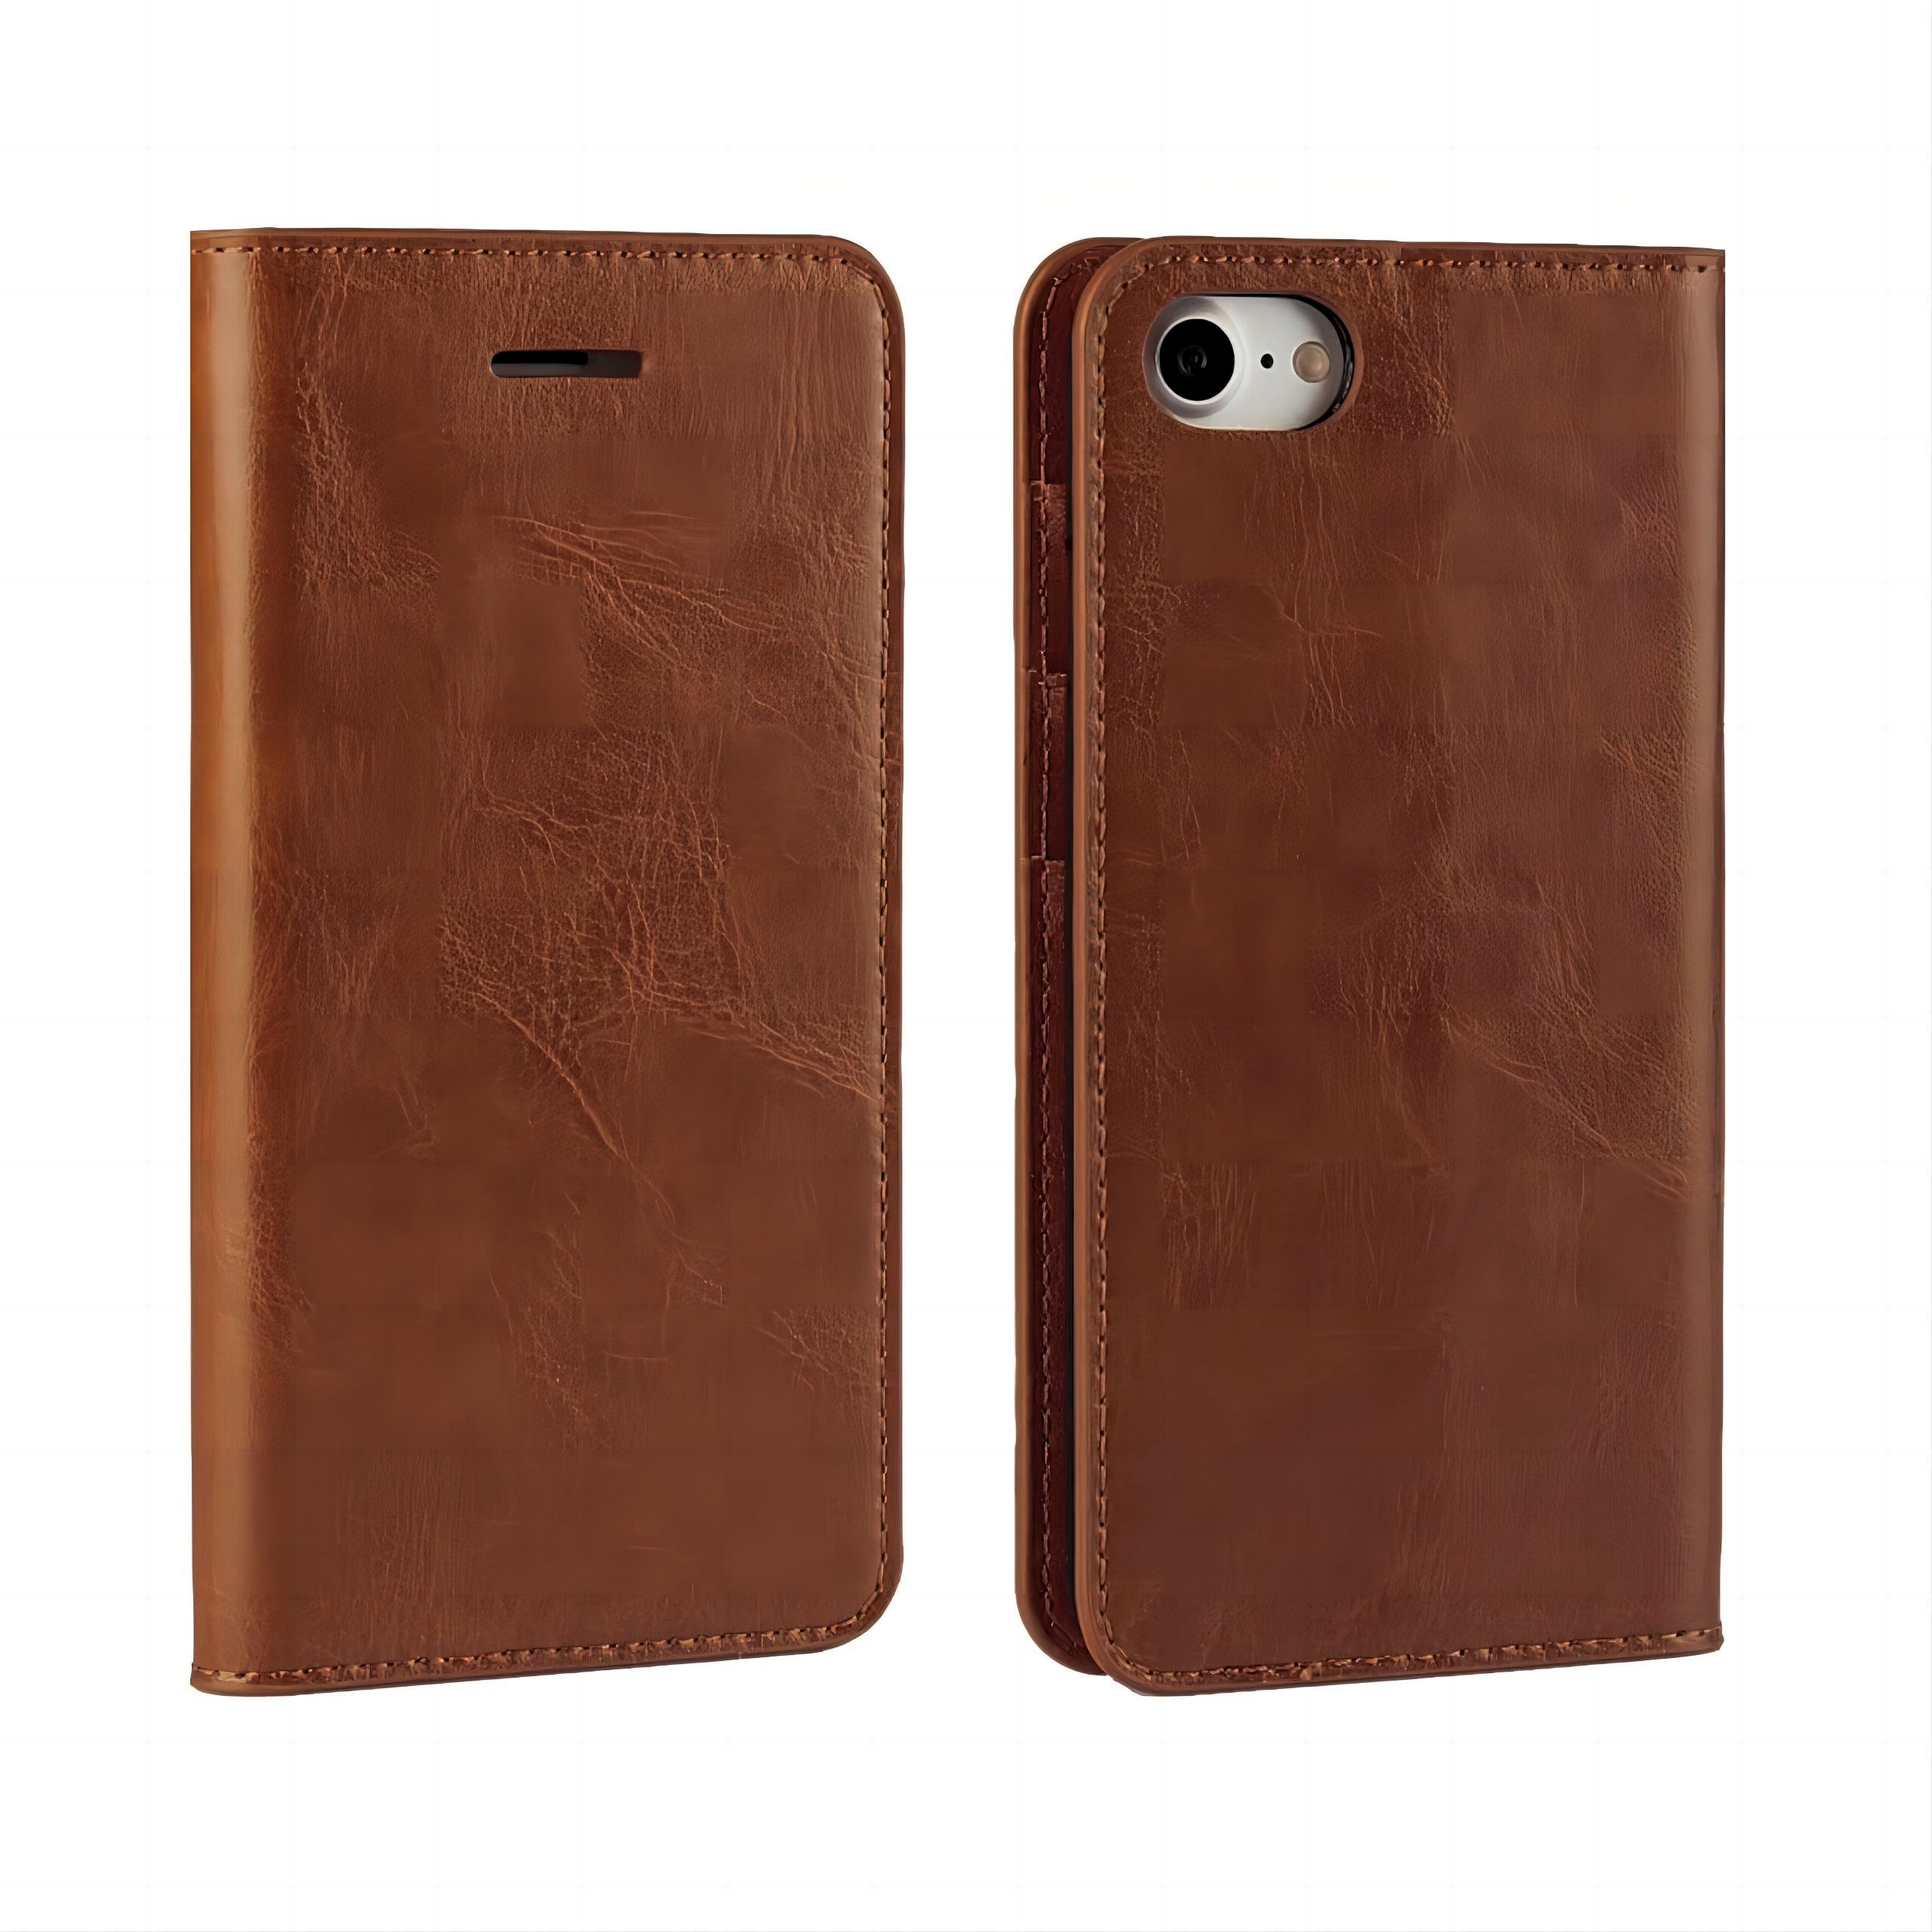 Coque portefeuille en cuir Veritable iPhone SE (2020), marron